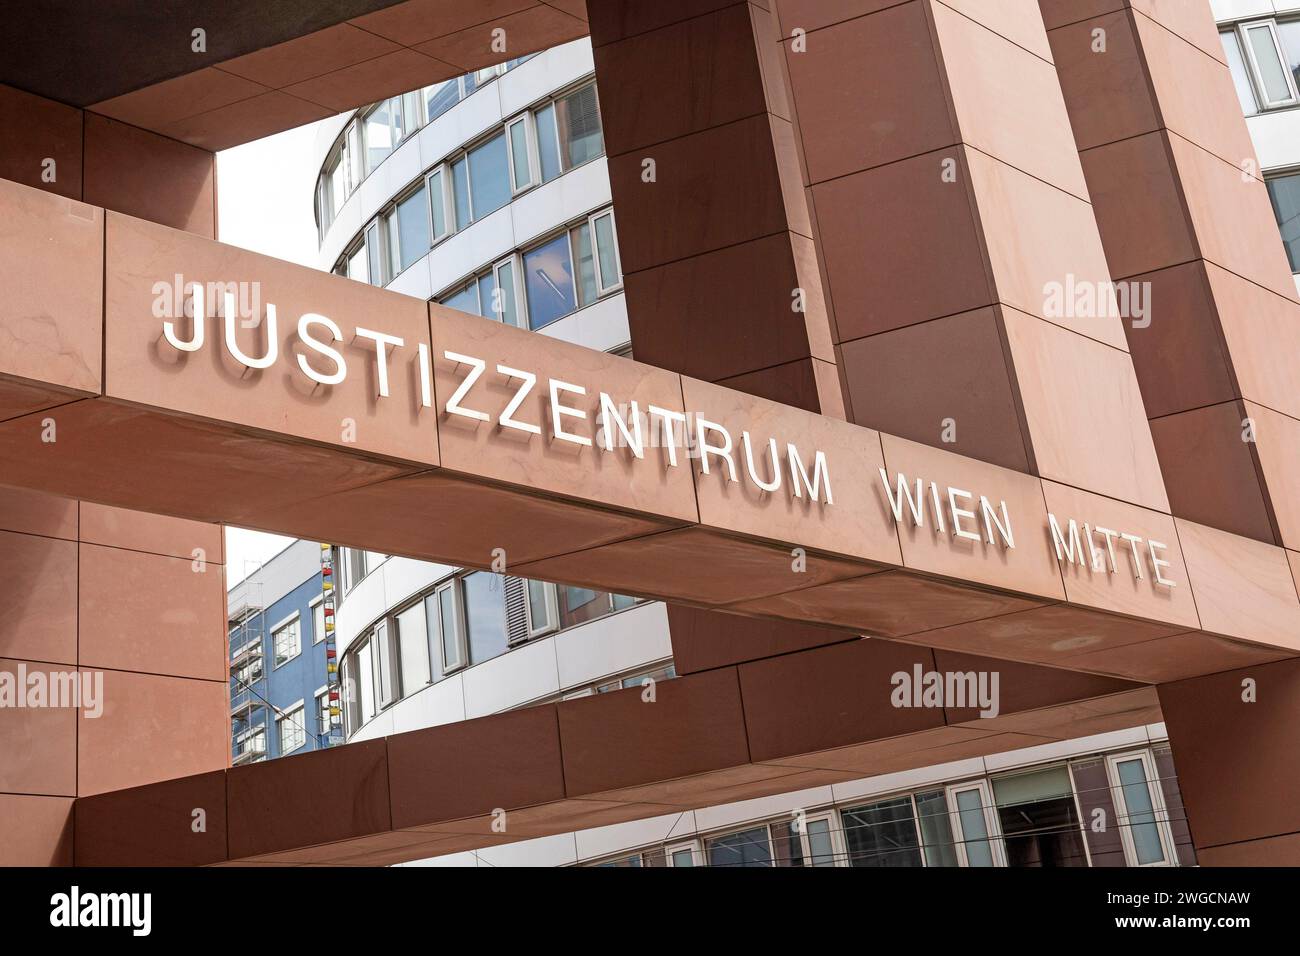 Centro di giustizia Vienna Mitte, Austria Foto Stock